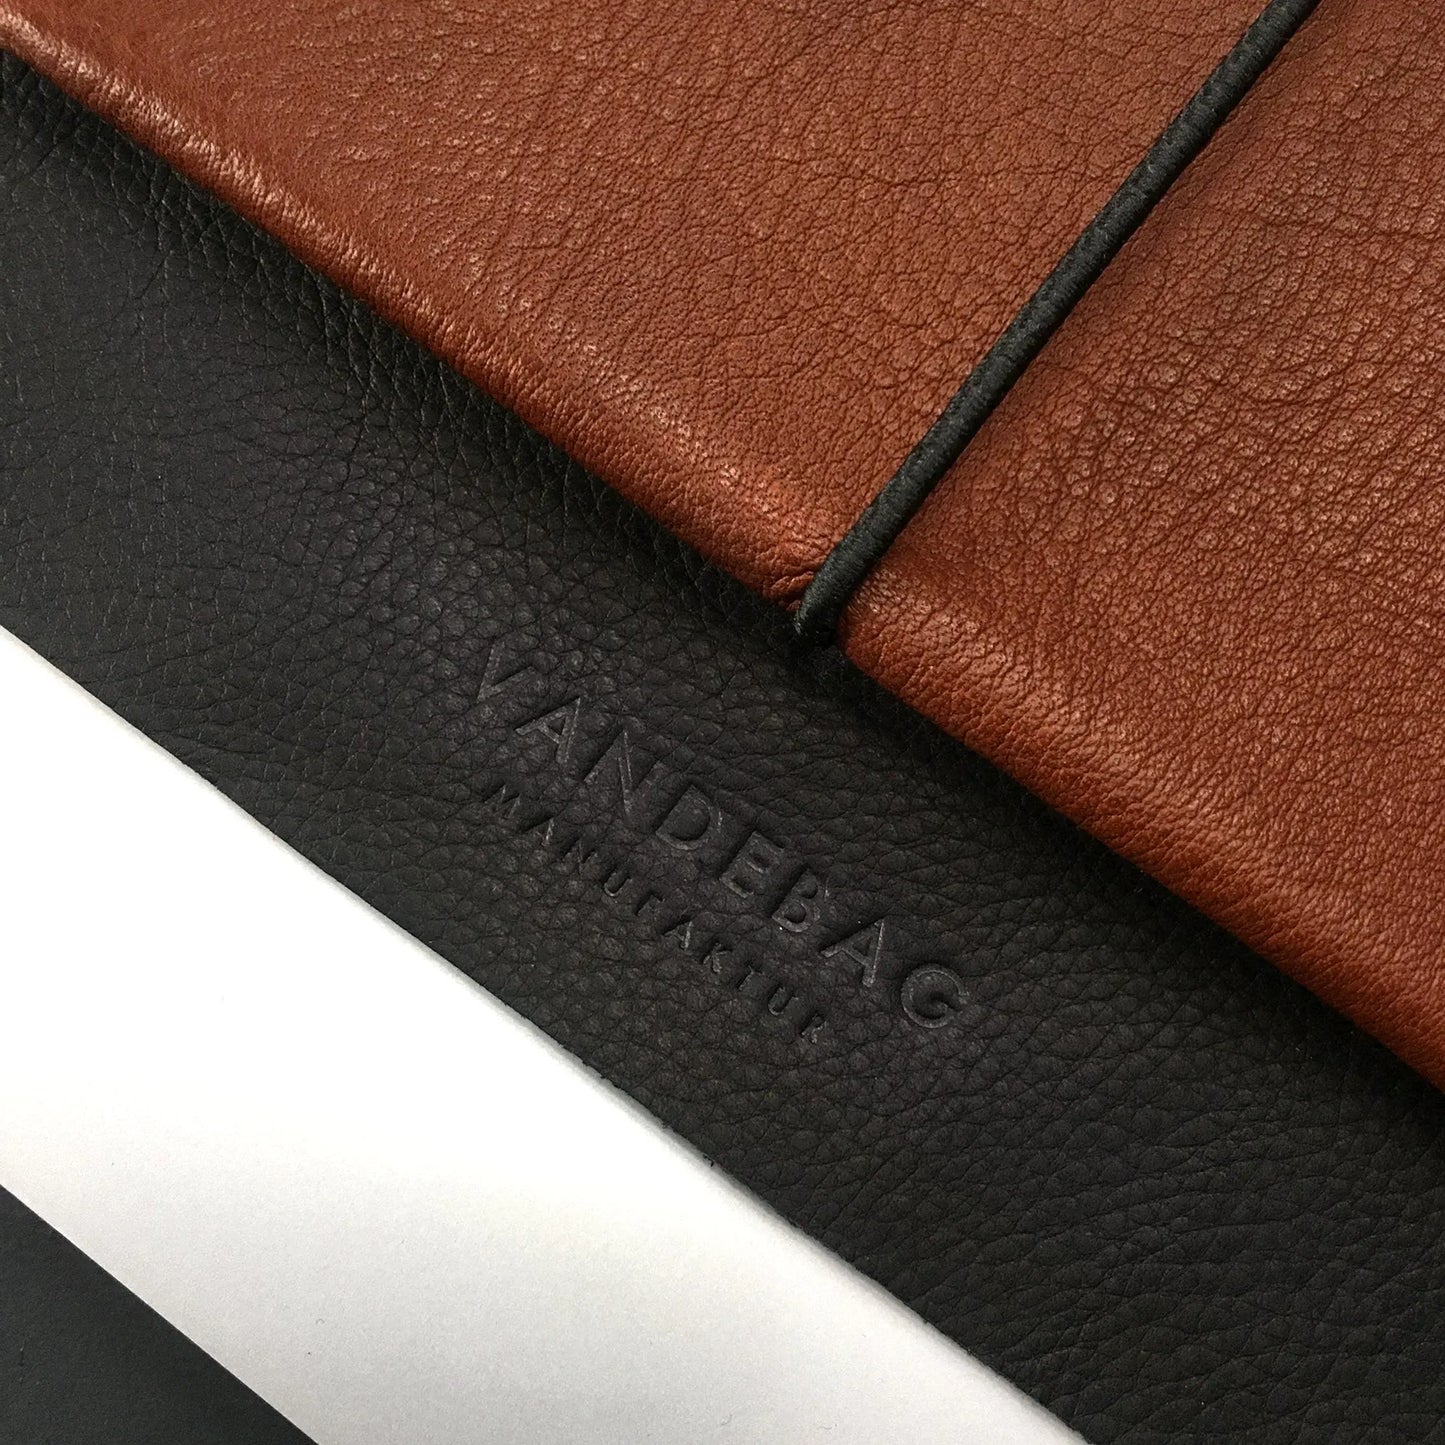 Detail einer braunen Macbookhülle aus Leder mit schwarzer Verschlussklappe in die das Logo eingeprägt ist